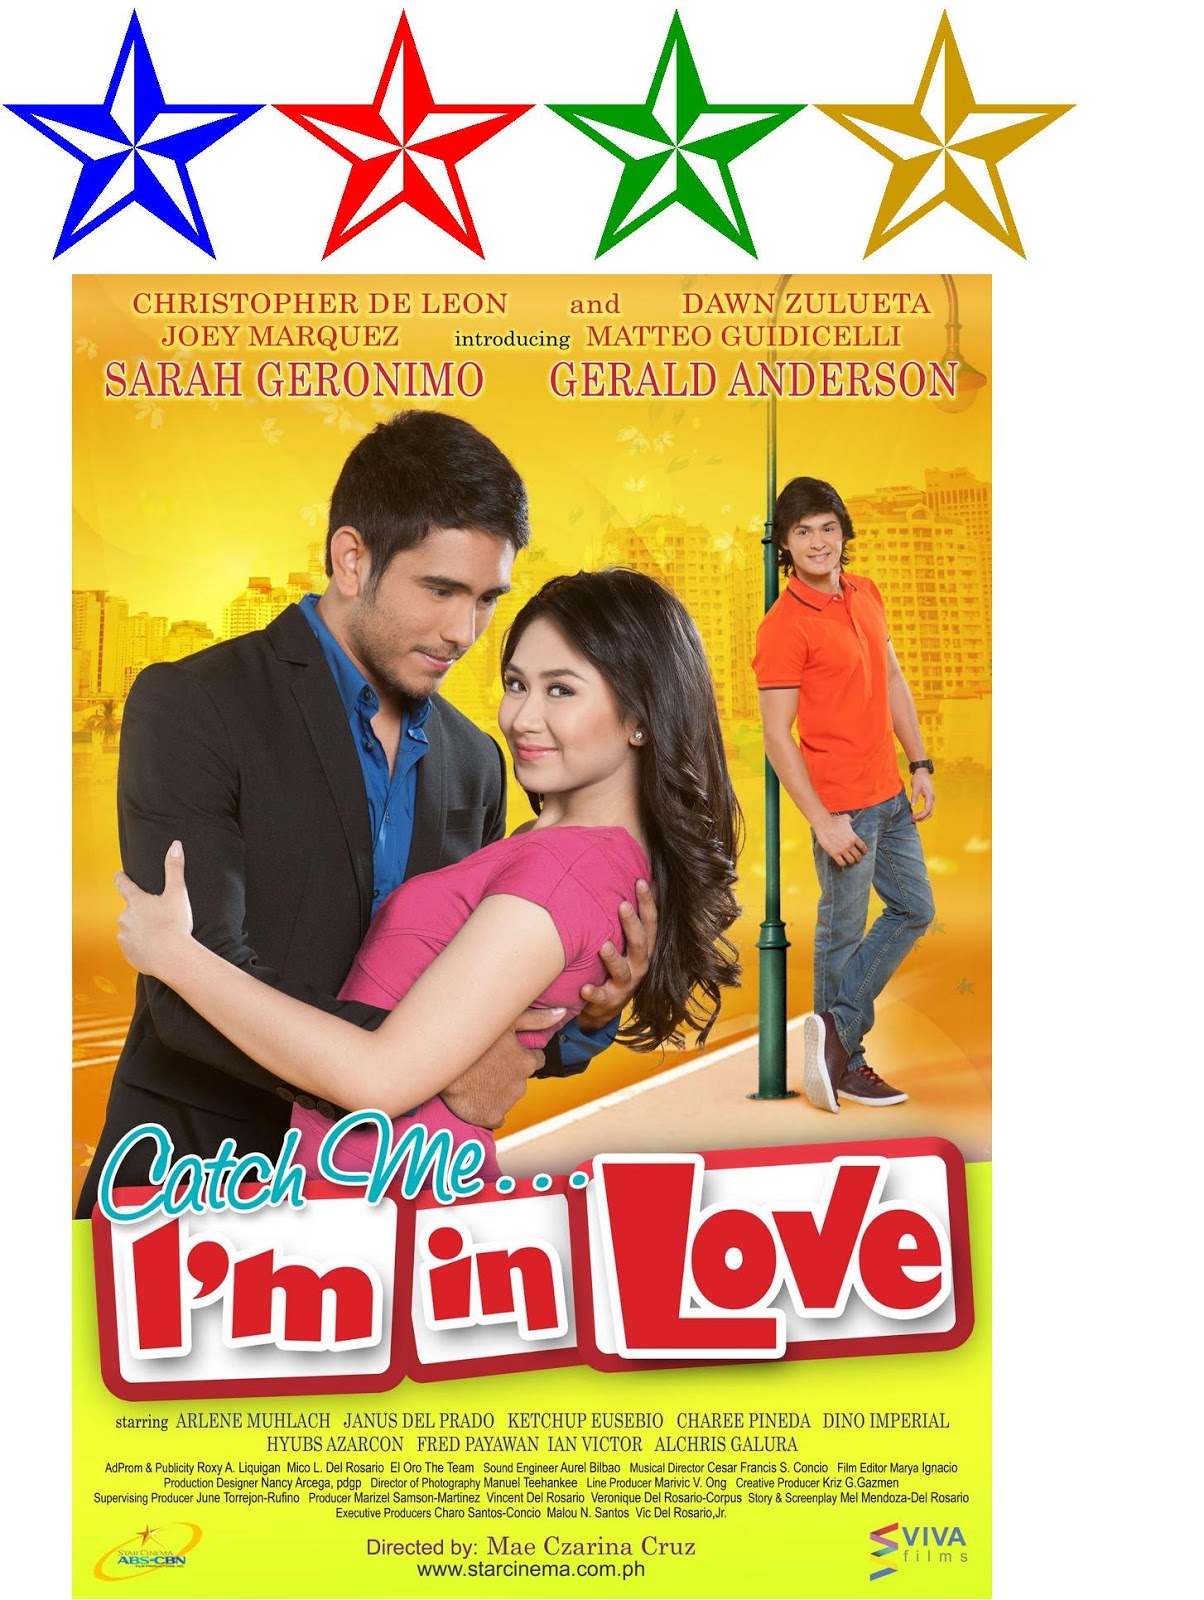 Catch Me I'm in Love (2011) Superstarvalue+film+catch+me+im+in+love